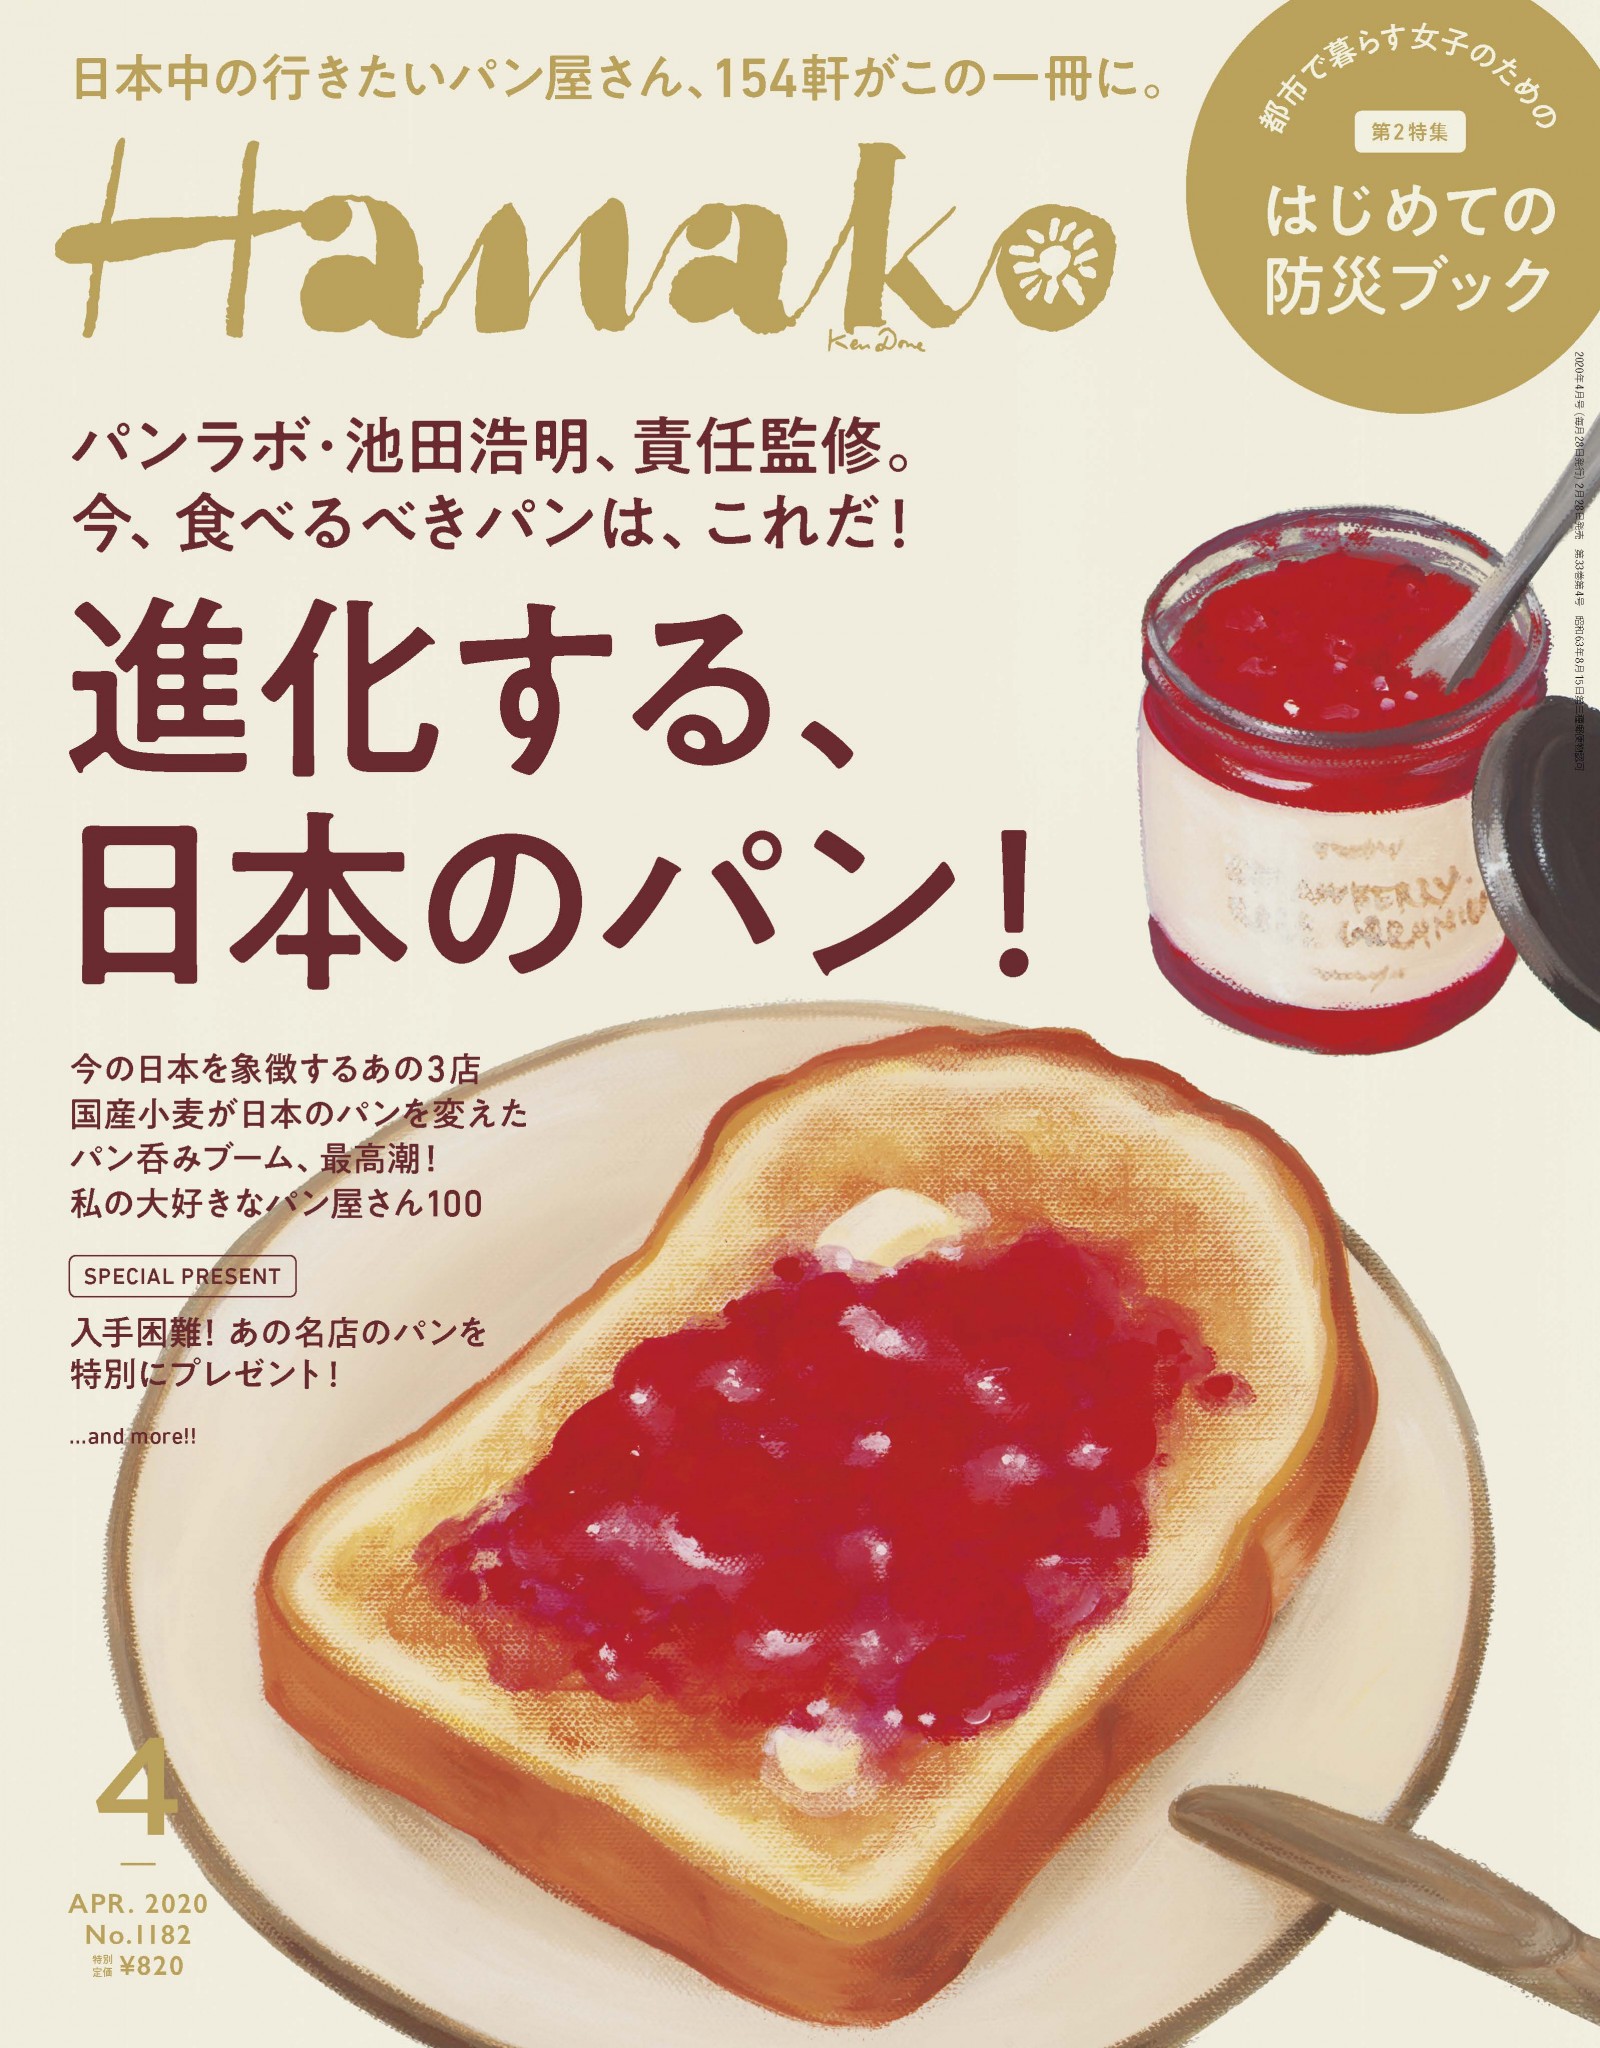 パンラボ 池田浩明 責任監修 進化する日本のパン No 11 Hanako Tokyo